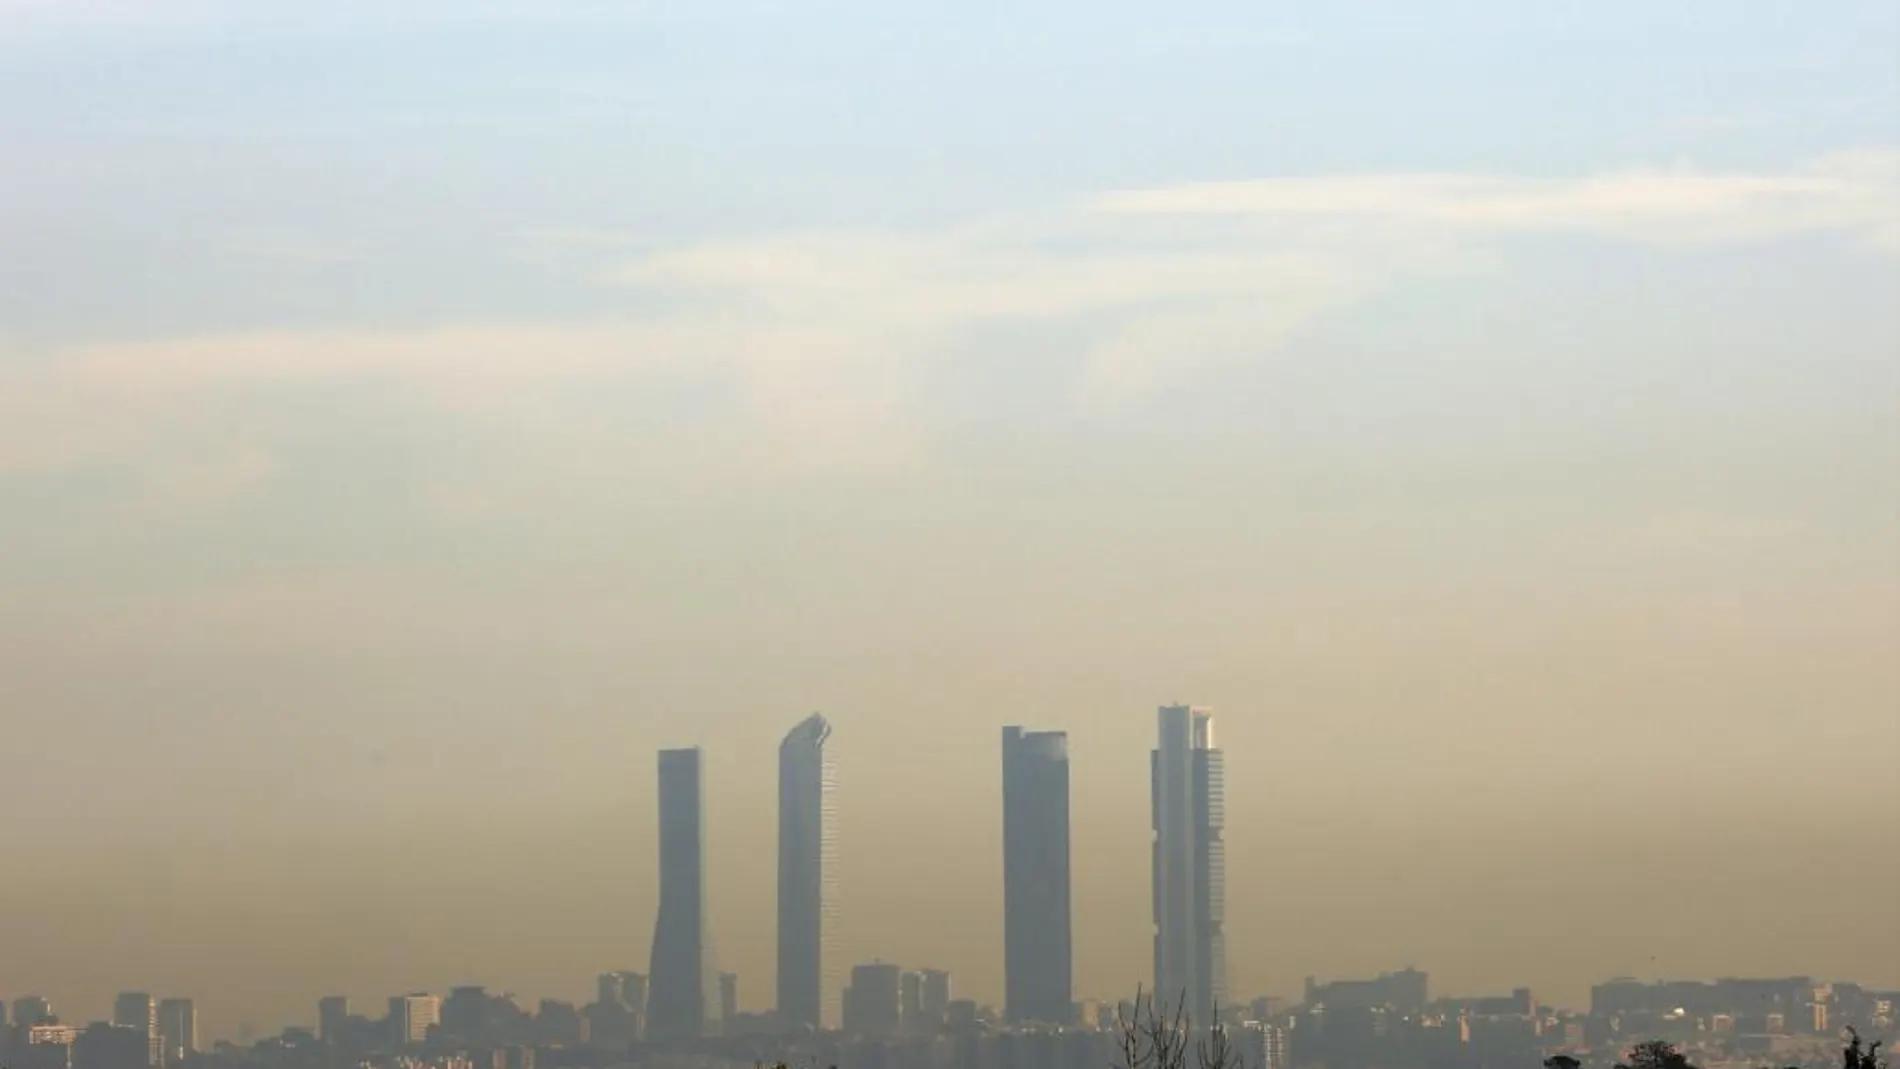 Las Cuatro Torres se perfilan entre la nube de polución de Madrid.